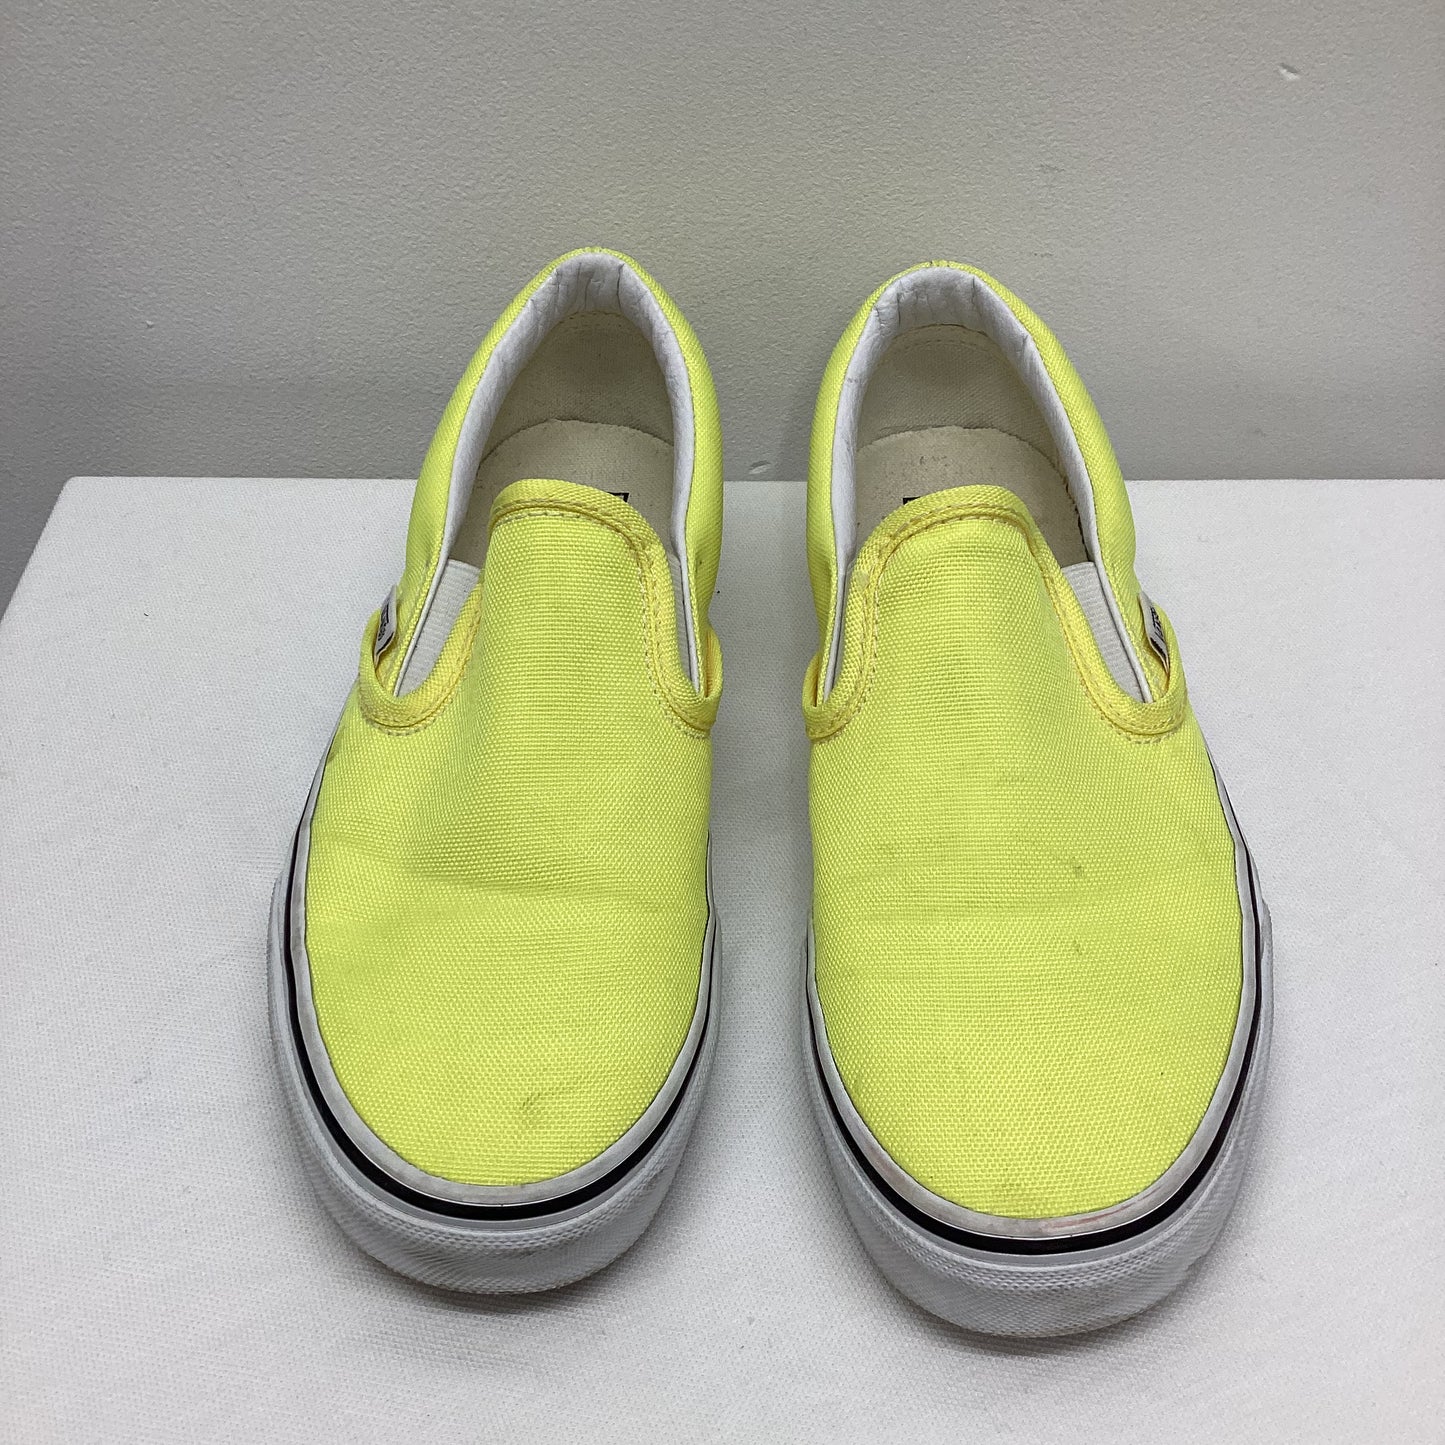 Vans Classic Canvas Slip On Neon Lemon Yellow Trainer Shoes UK 4 EU 36.5